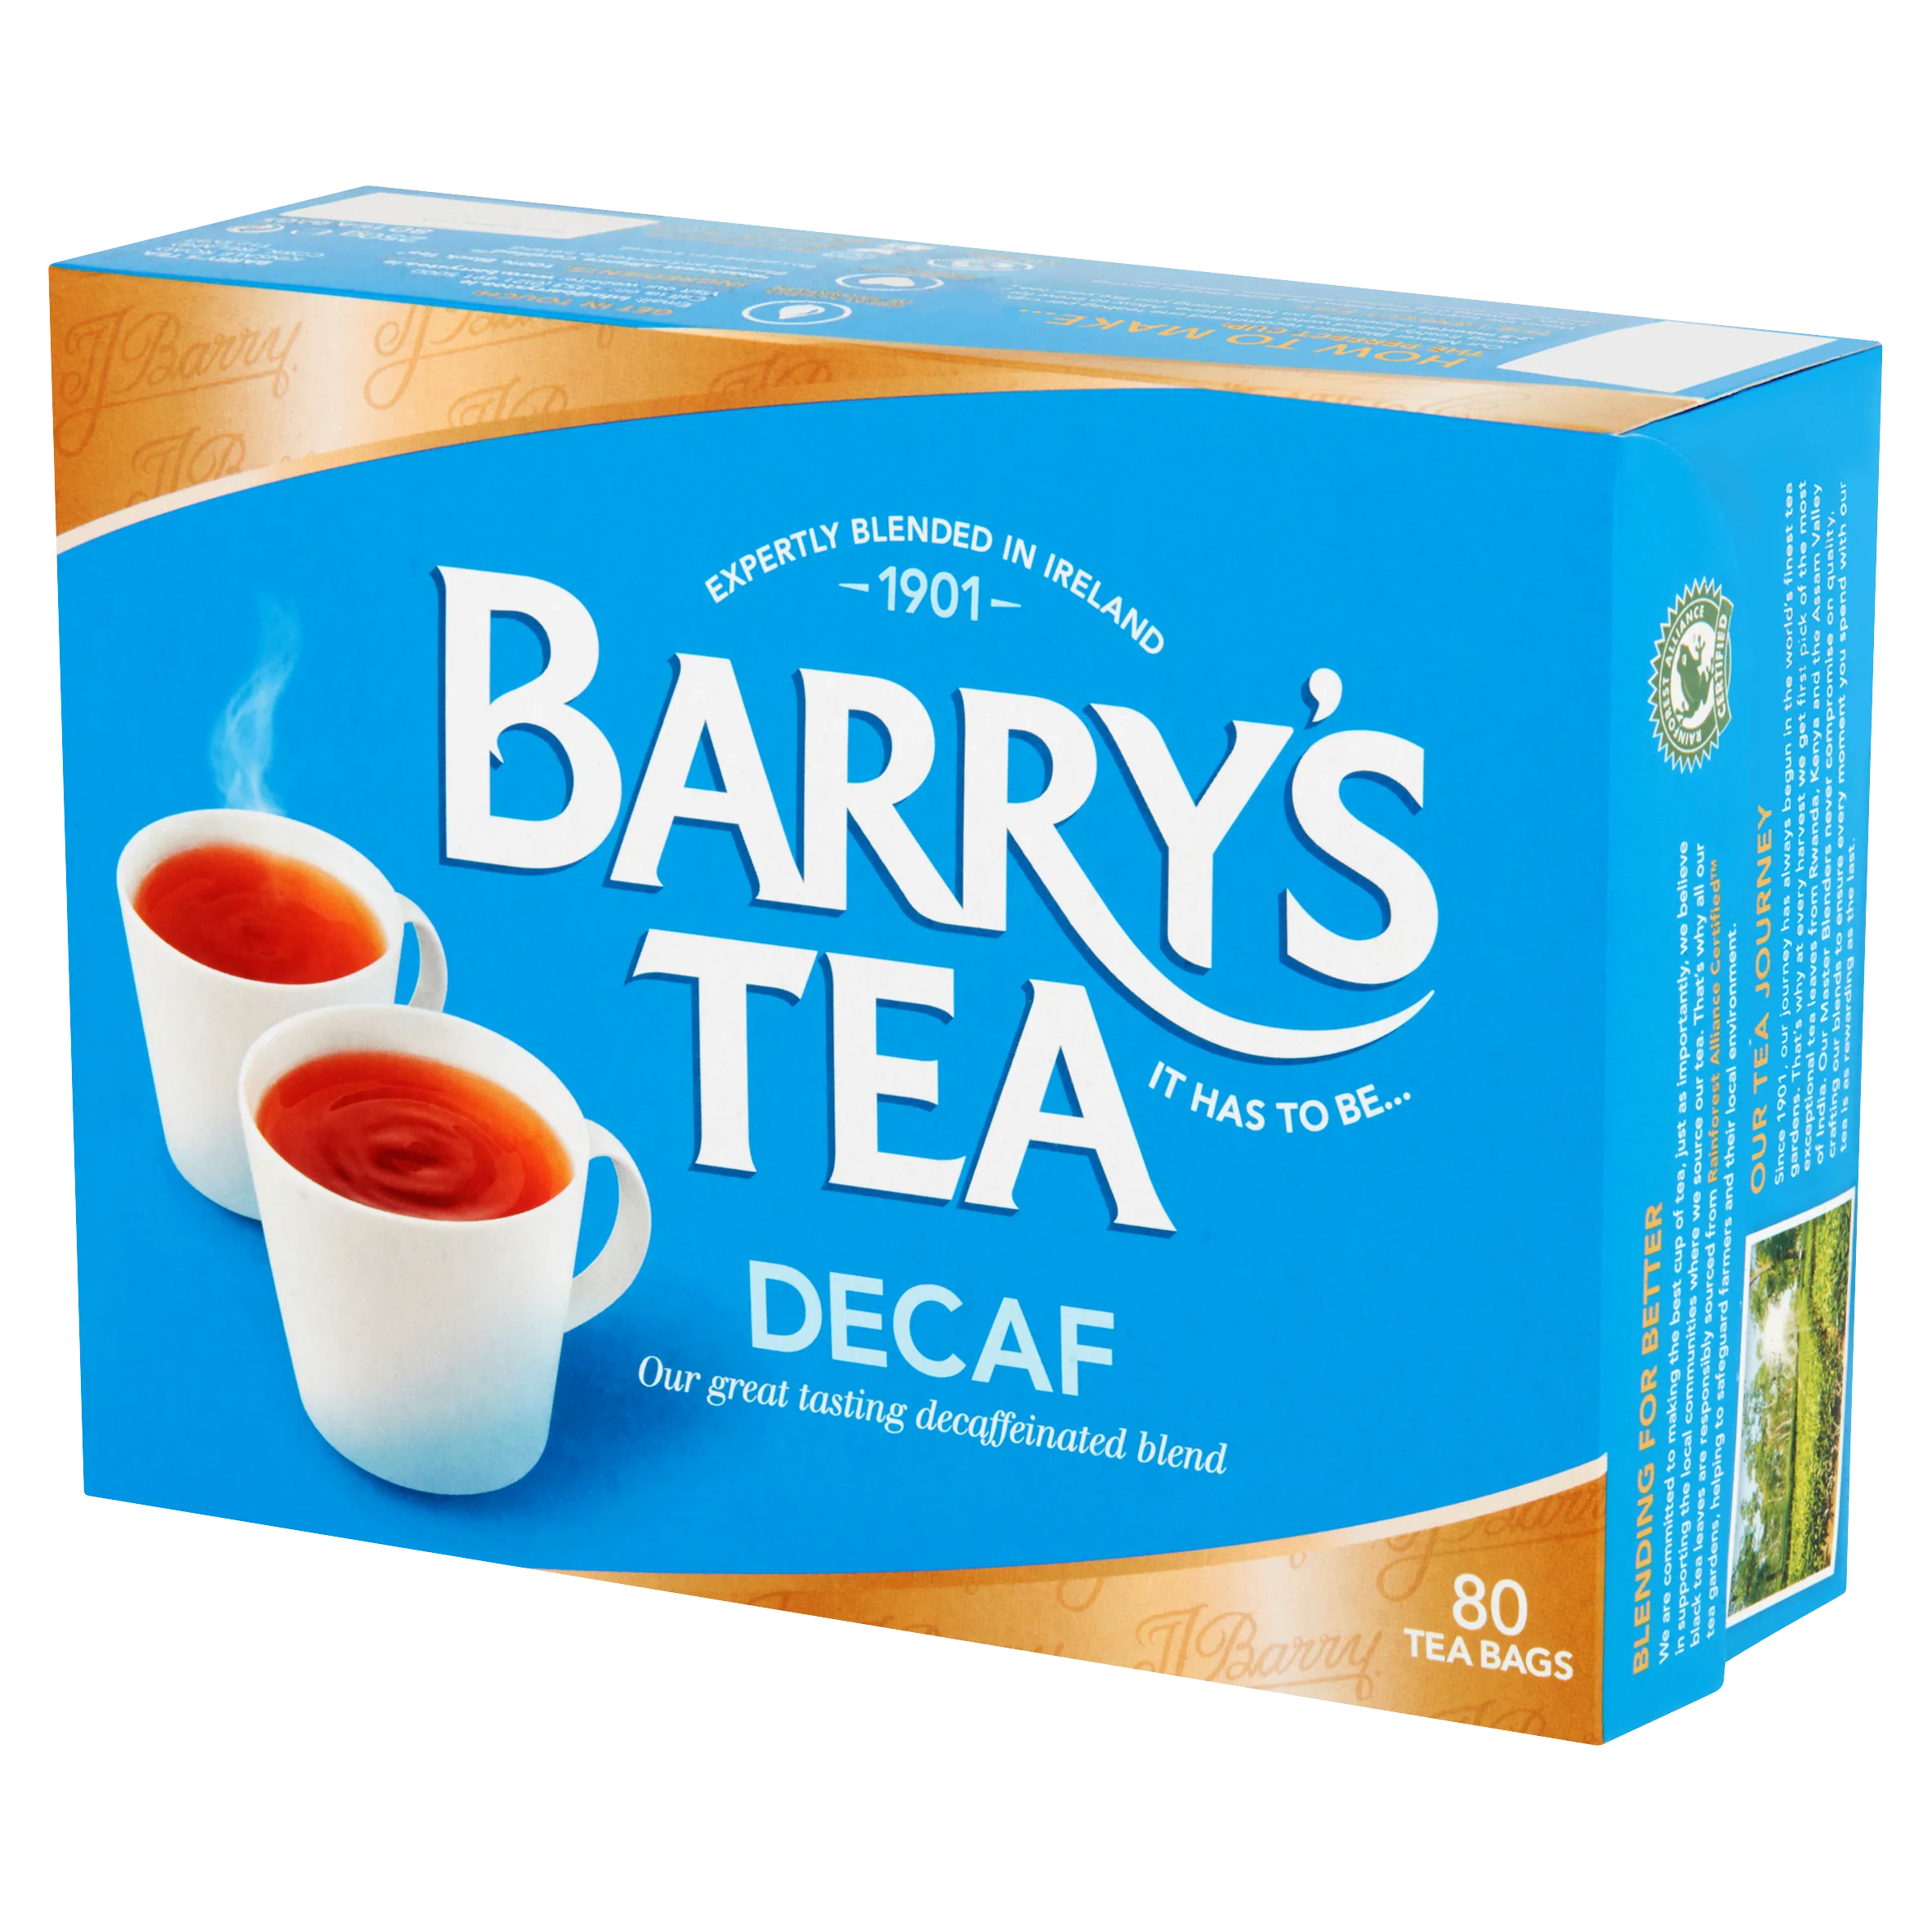 Barry's Decaf Tea Blend image